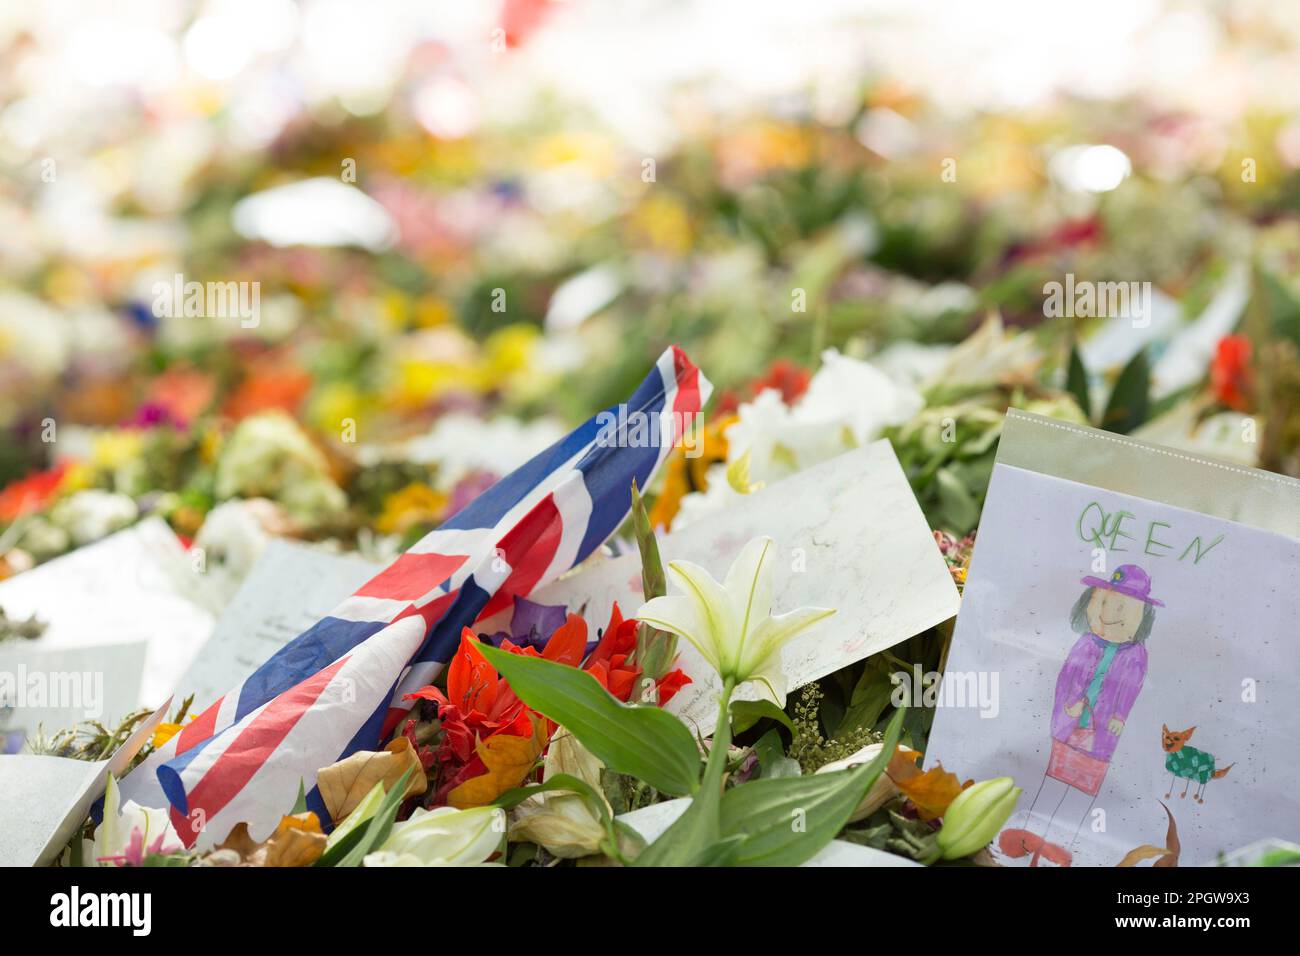 Les gens visitent Green Park, où les hommages floraux sont laissés, près de Buckingham Palace à Londres le samedi 1st depuis les funérailles de la reine. Banque D'Images